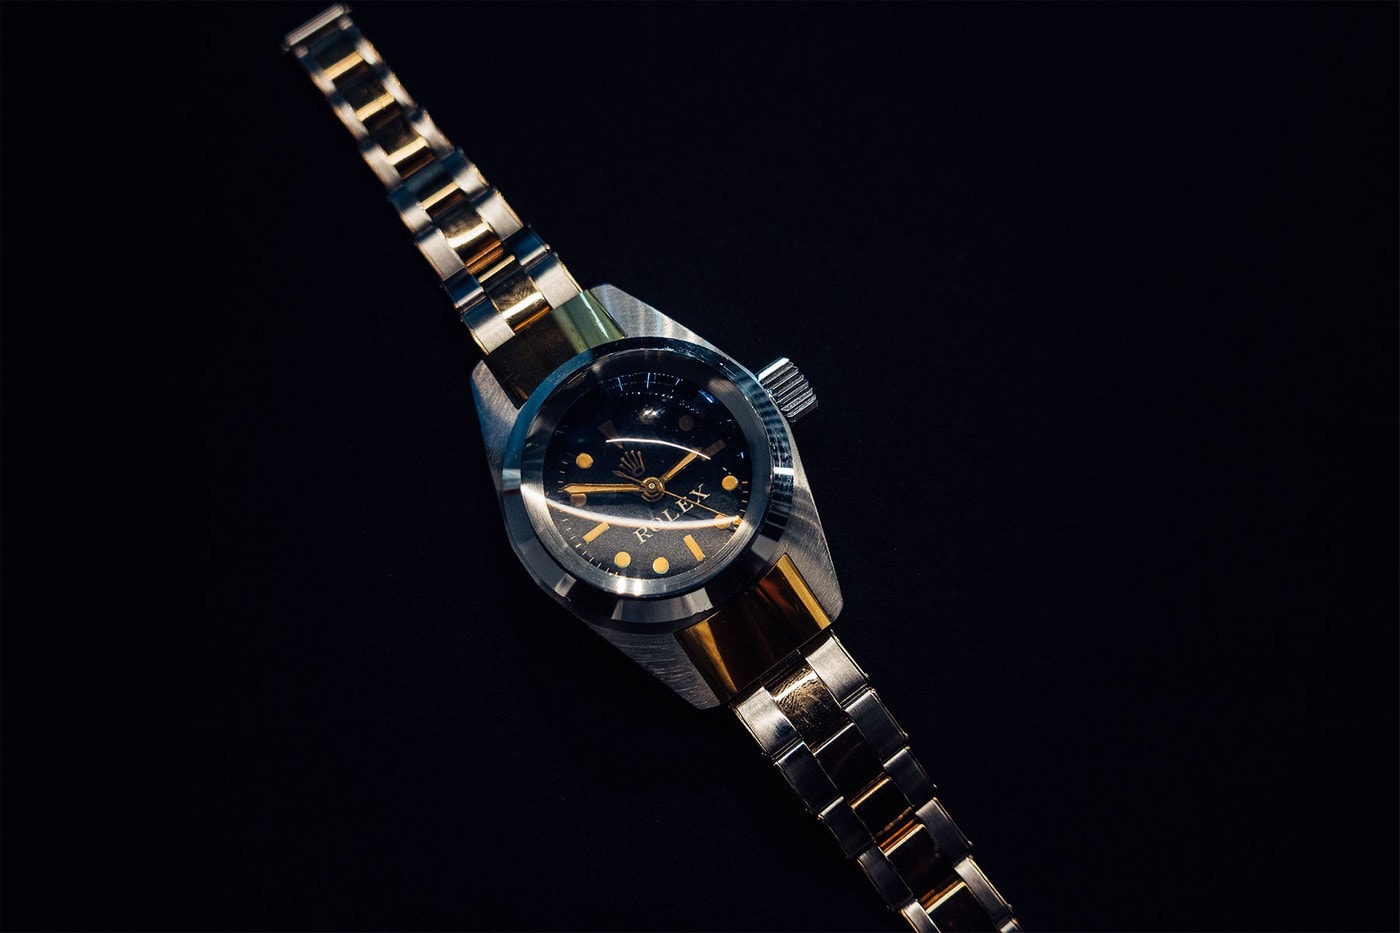 獨家近賞極其罕有 Rolex Deep Sea Special 傳奇錶款